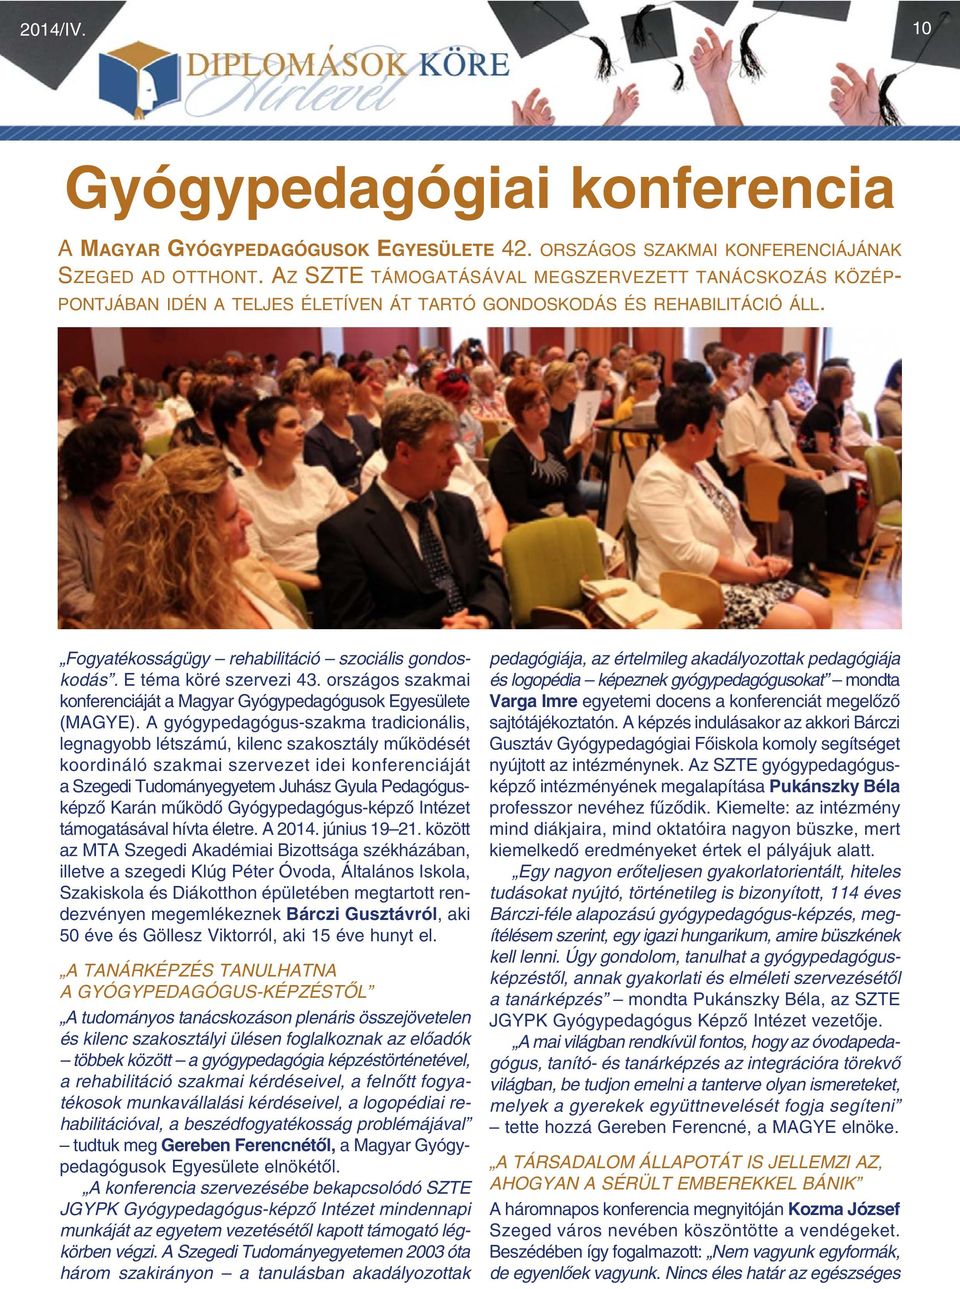 E téma köré szervezi 43. országos szakmai konferenciáját a Magyar Gyógypedagógusok Egyesülete (MAGYE).